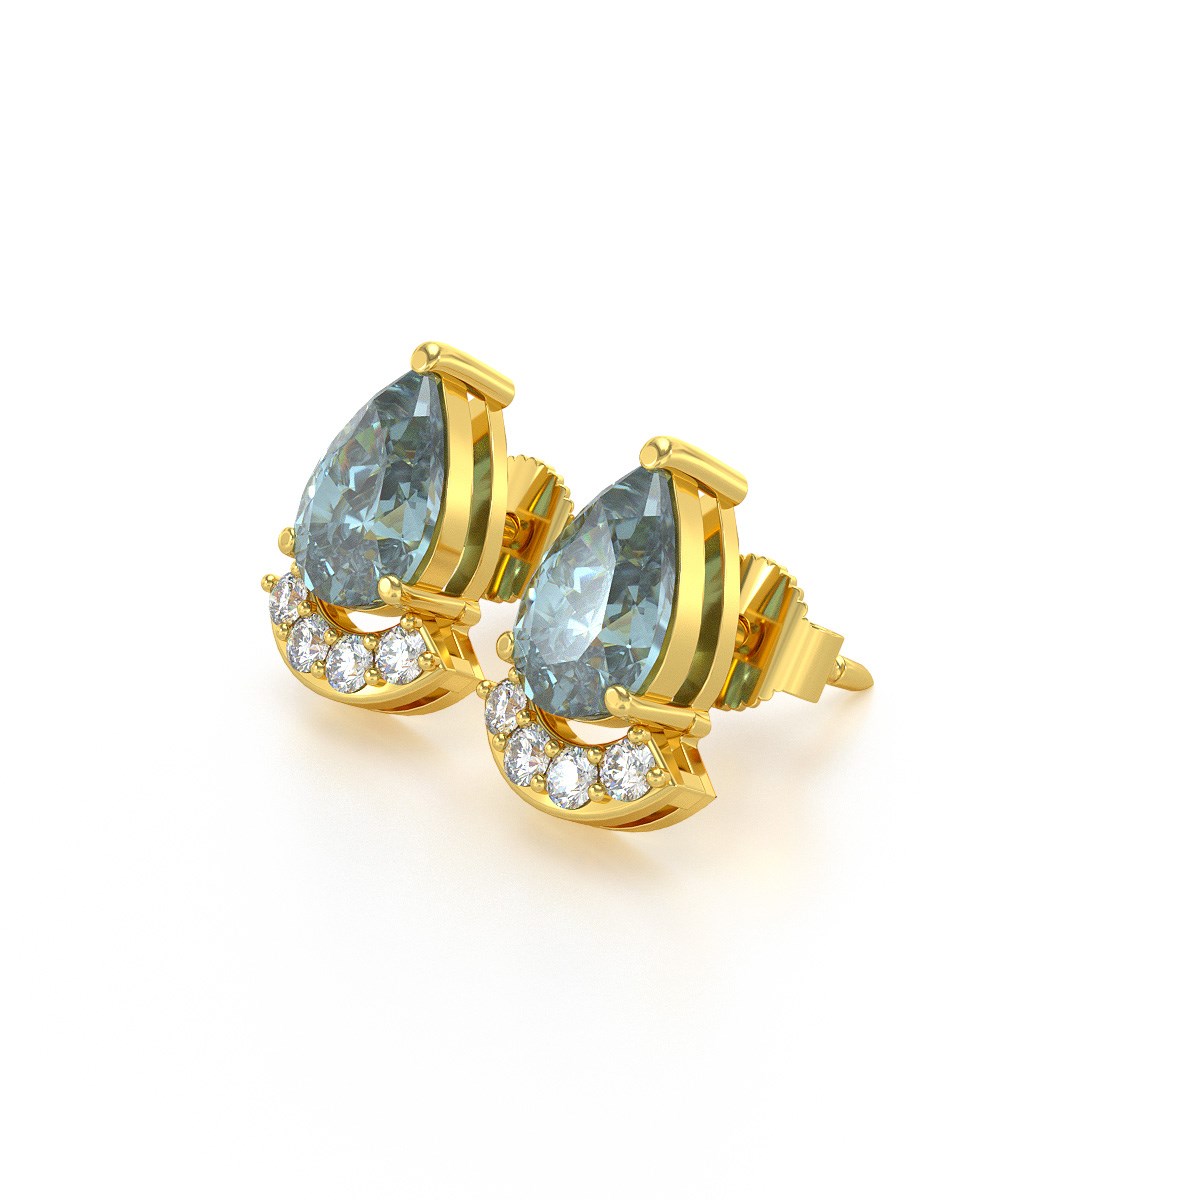 Boucles d'oreilles ADEN Or 585 Jaune Aigue-Marine forme Poire et Diamants 1.4grs - vue 3